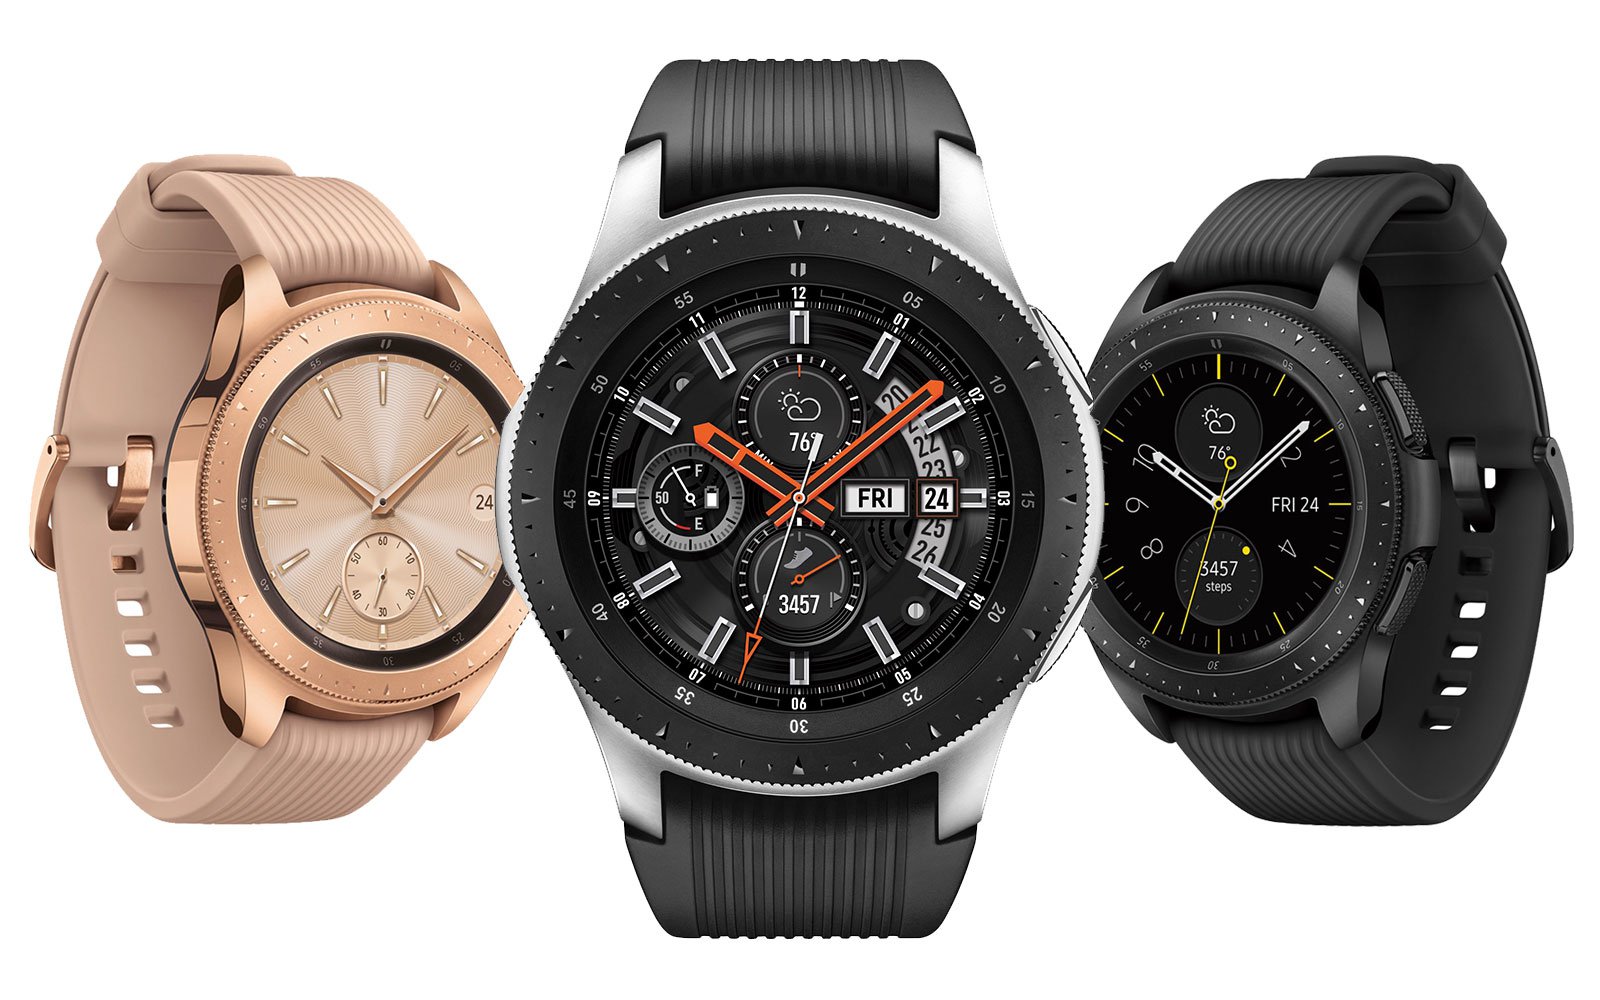 Samsung Galaxy Watch eSim เริ่มวางจำหน่ายในประเทศไทยแล้ววันนี้ ราคาเริ่มต้น 11,900 บาท